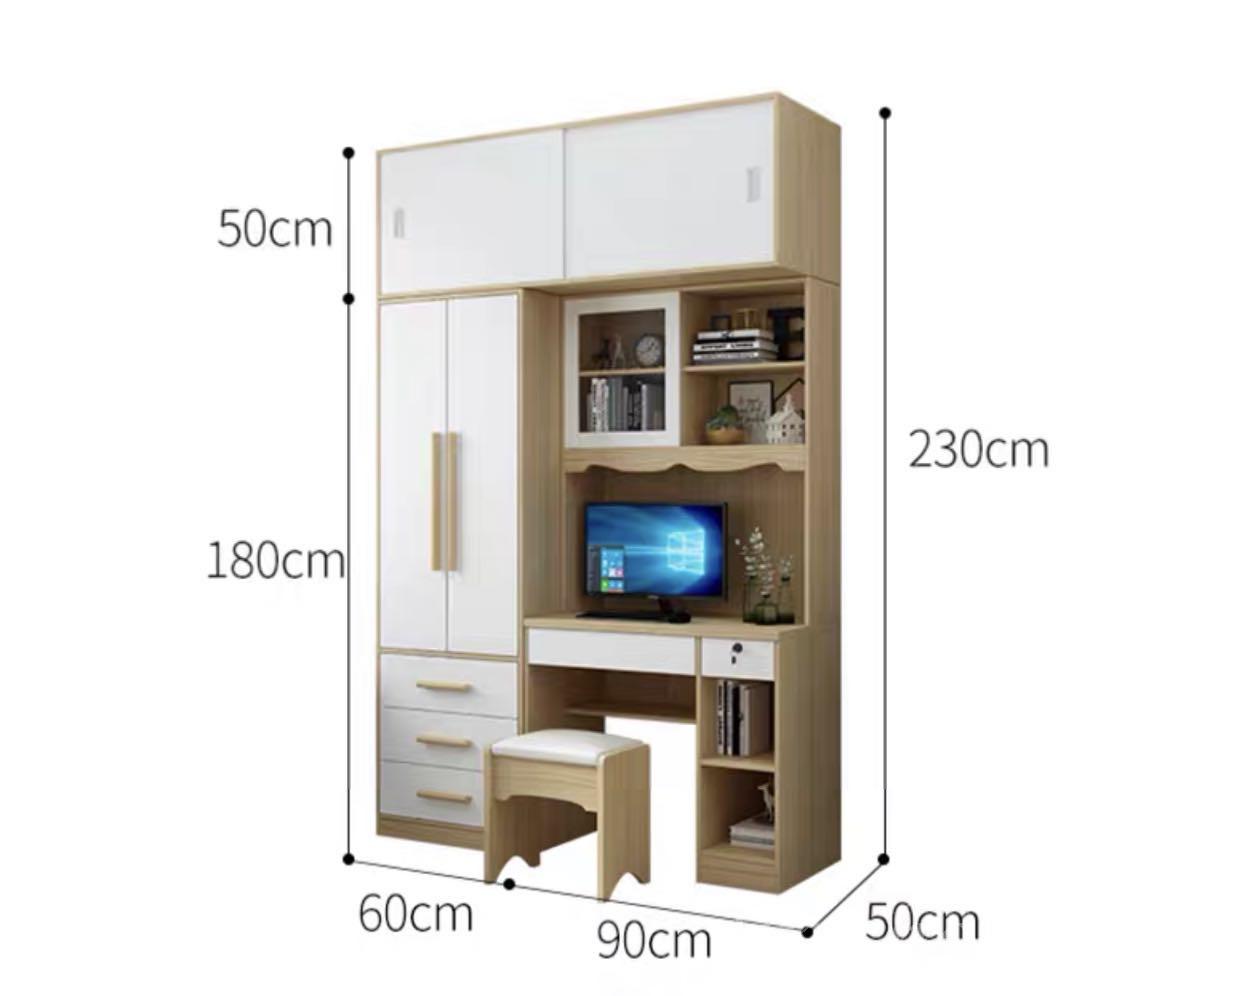 北歐品味系列 單門衣櫃電腦枱組合 130cm/150cm/180cm/210cm (IS6577)